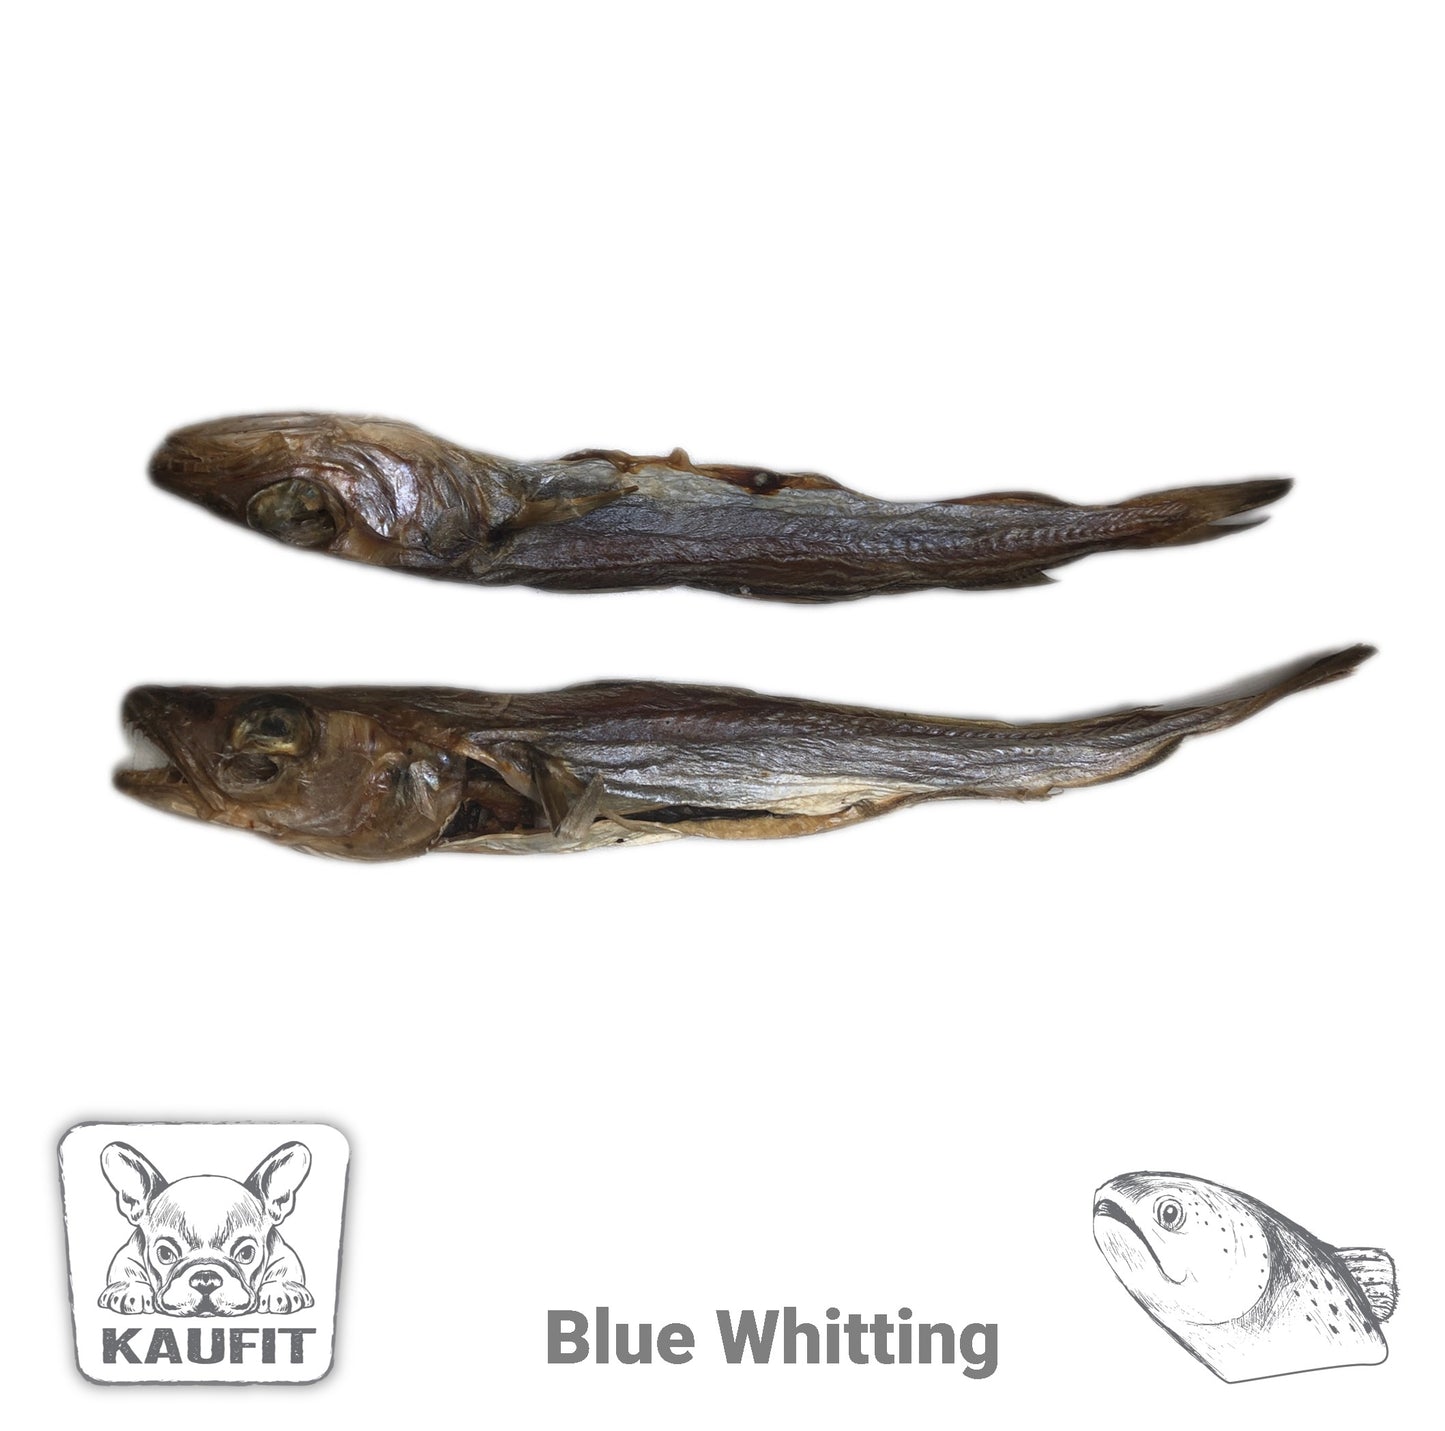 Blue Whitting